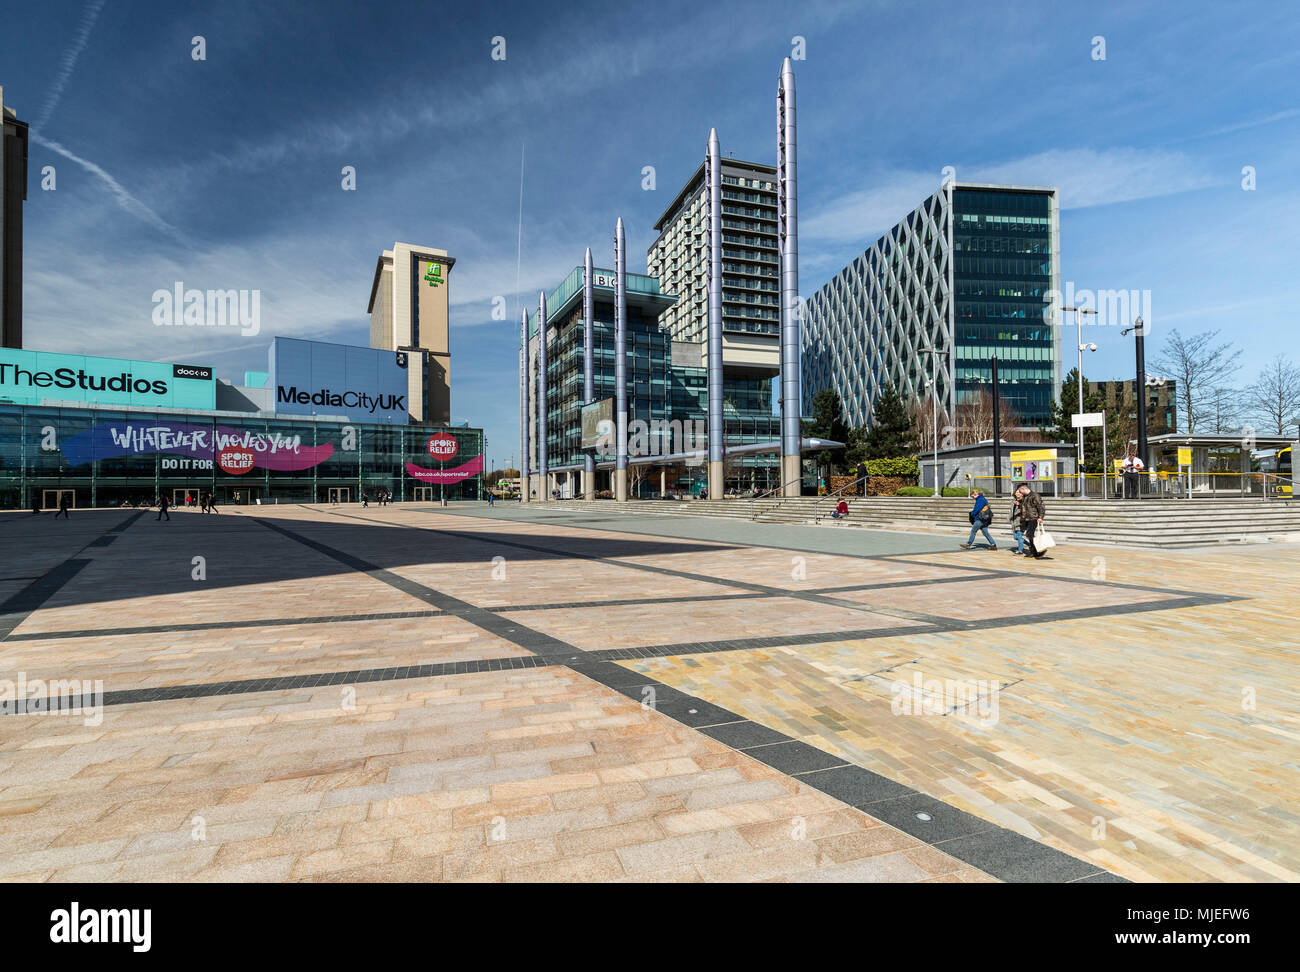 L'Europe, Angleterre, Royaume-Uni, Manchester - Media City Centre - Centre de la BBC et de Media City à Salford Quays Banque D'Images